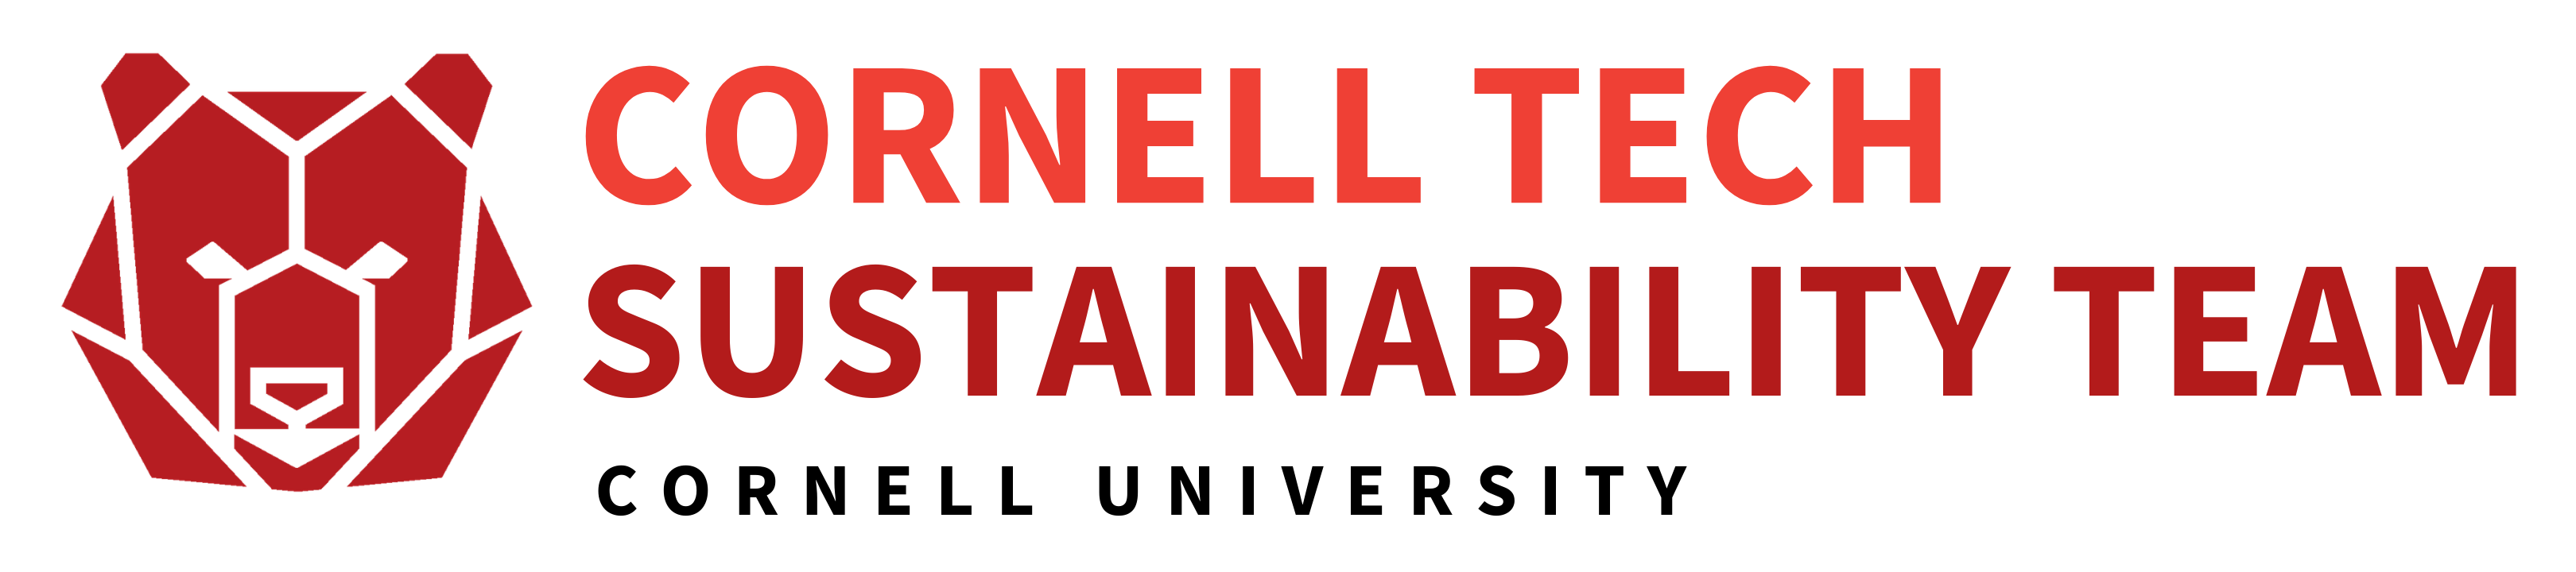 Cornell Tech Green team logo